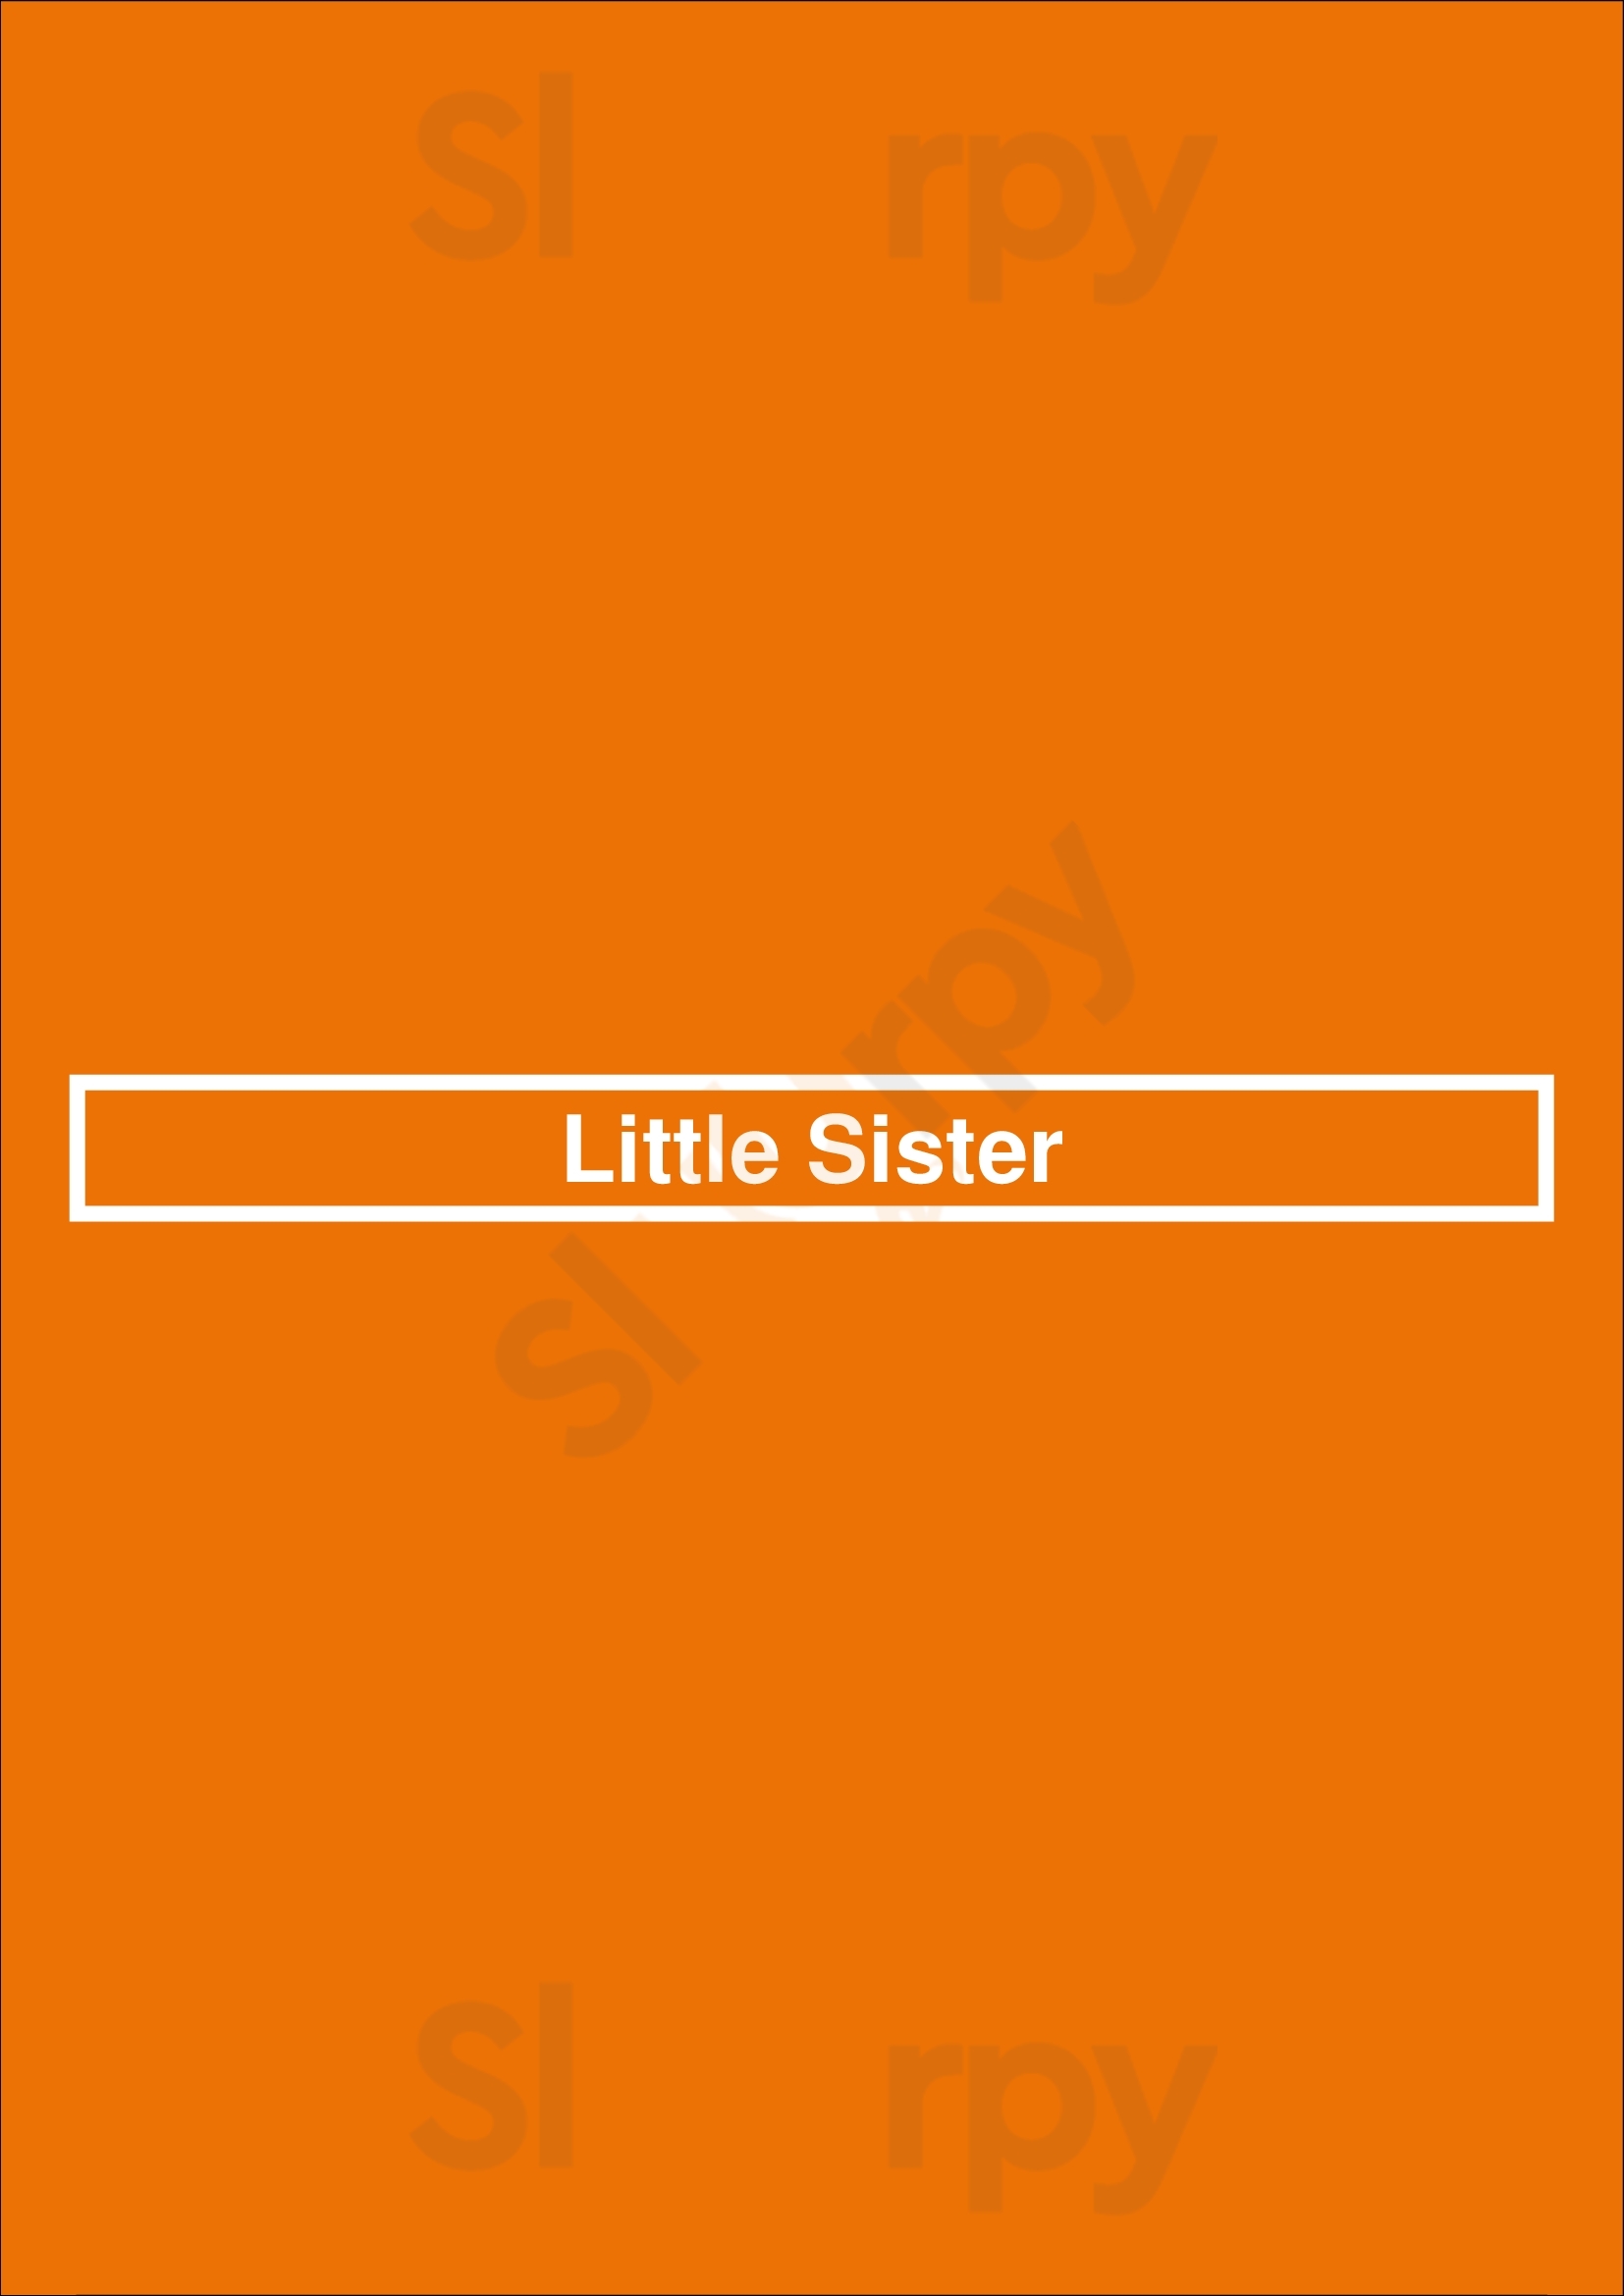 Little Sister Los Angeles Menu - 1